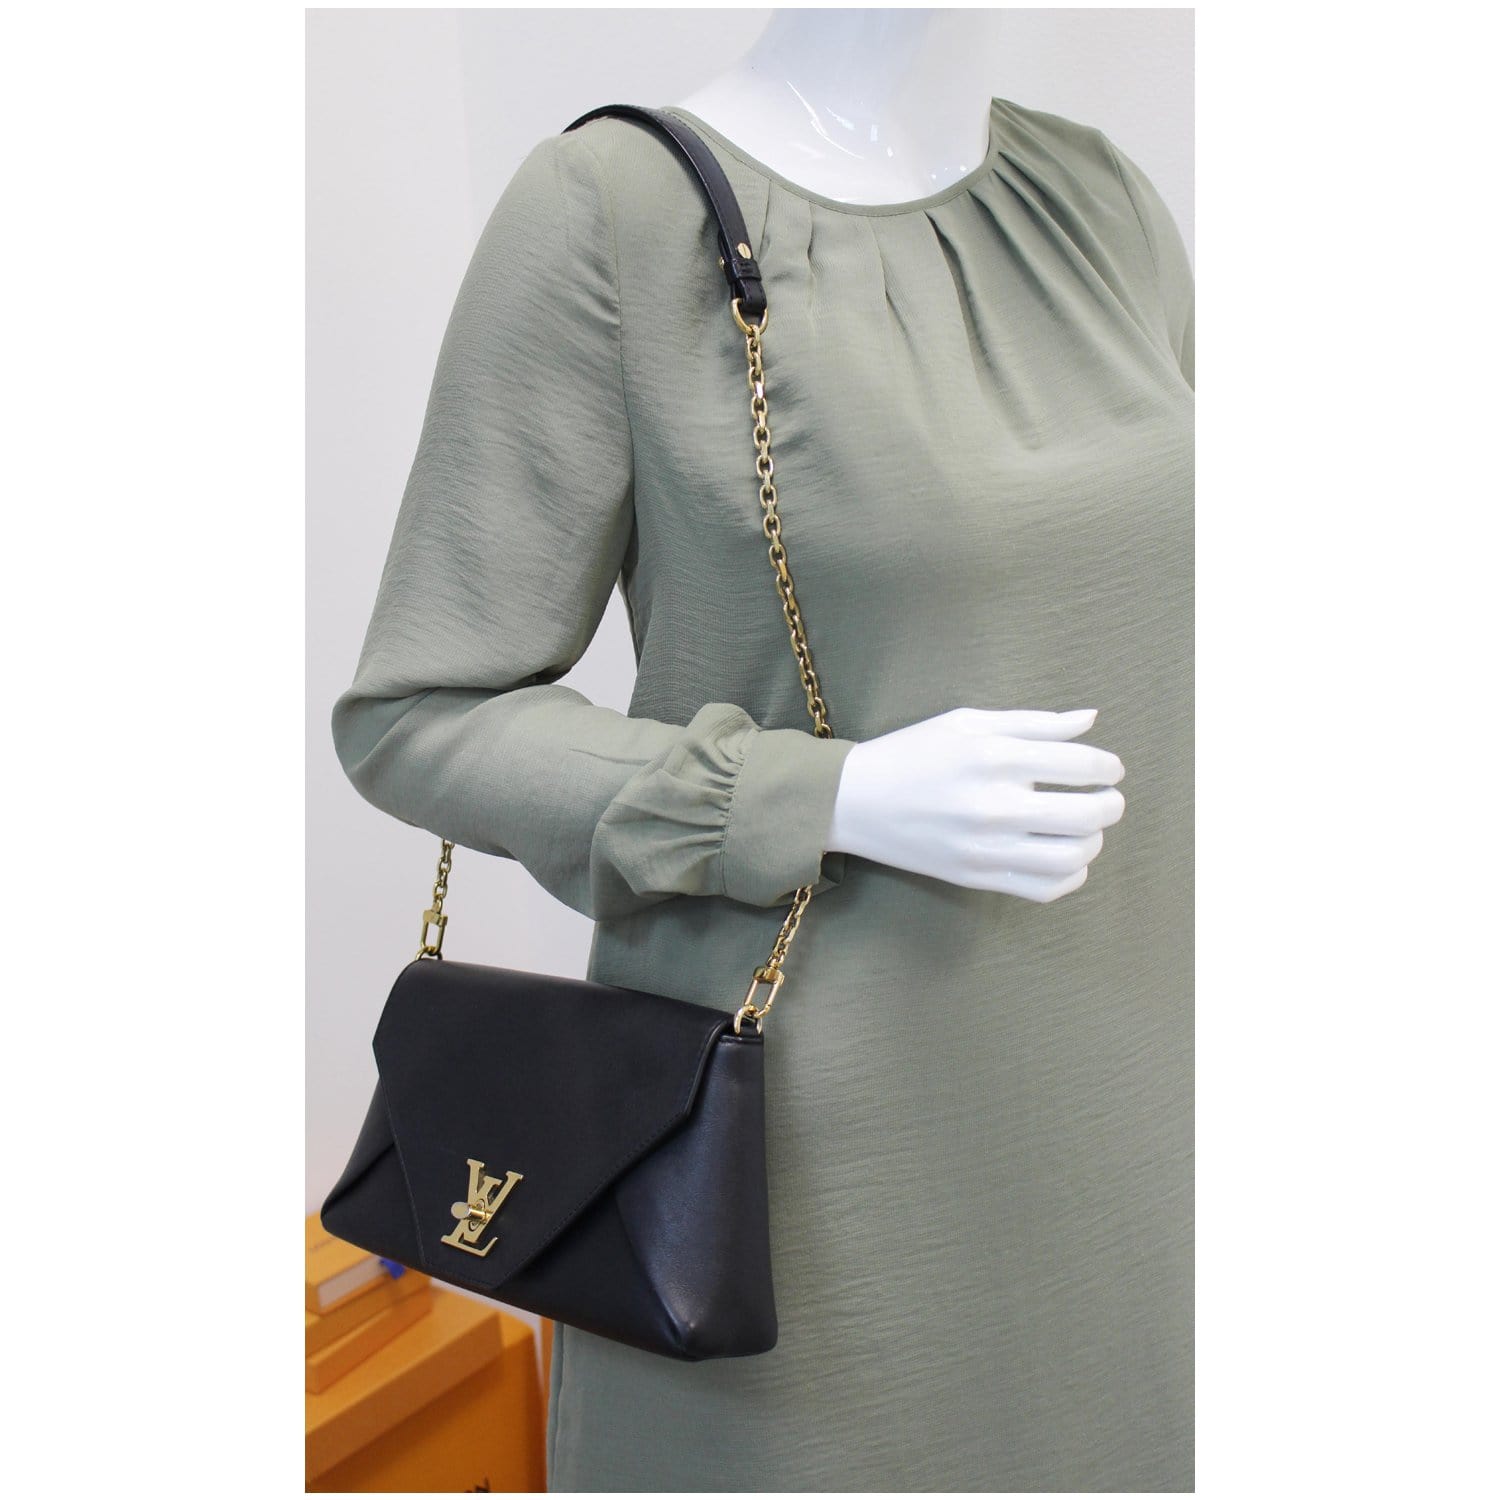 Love This Handbag! ~Louis Vuitton